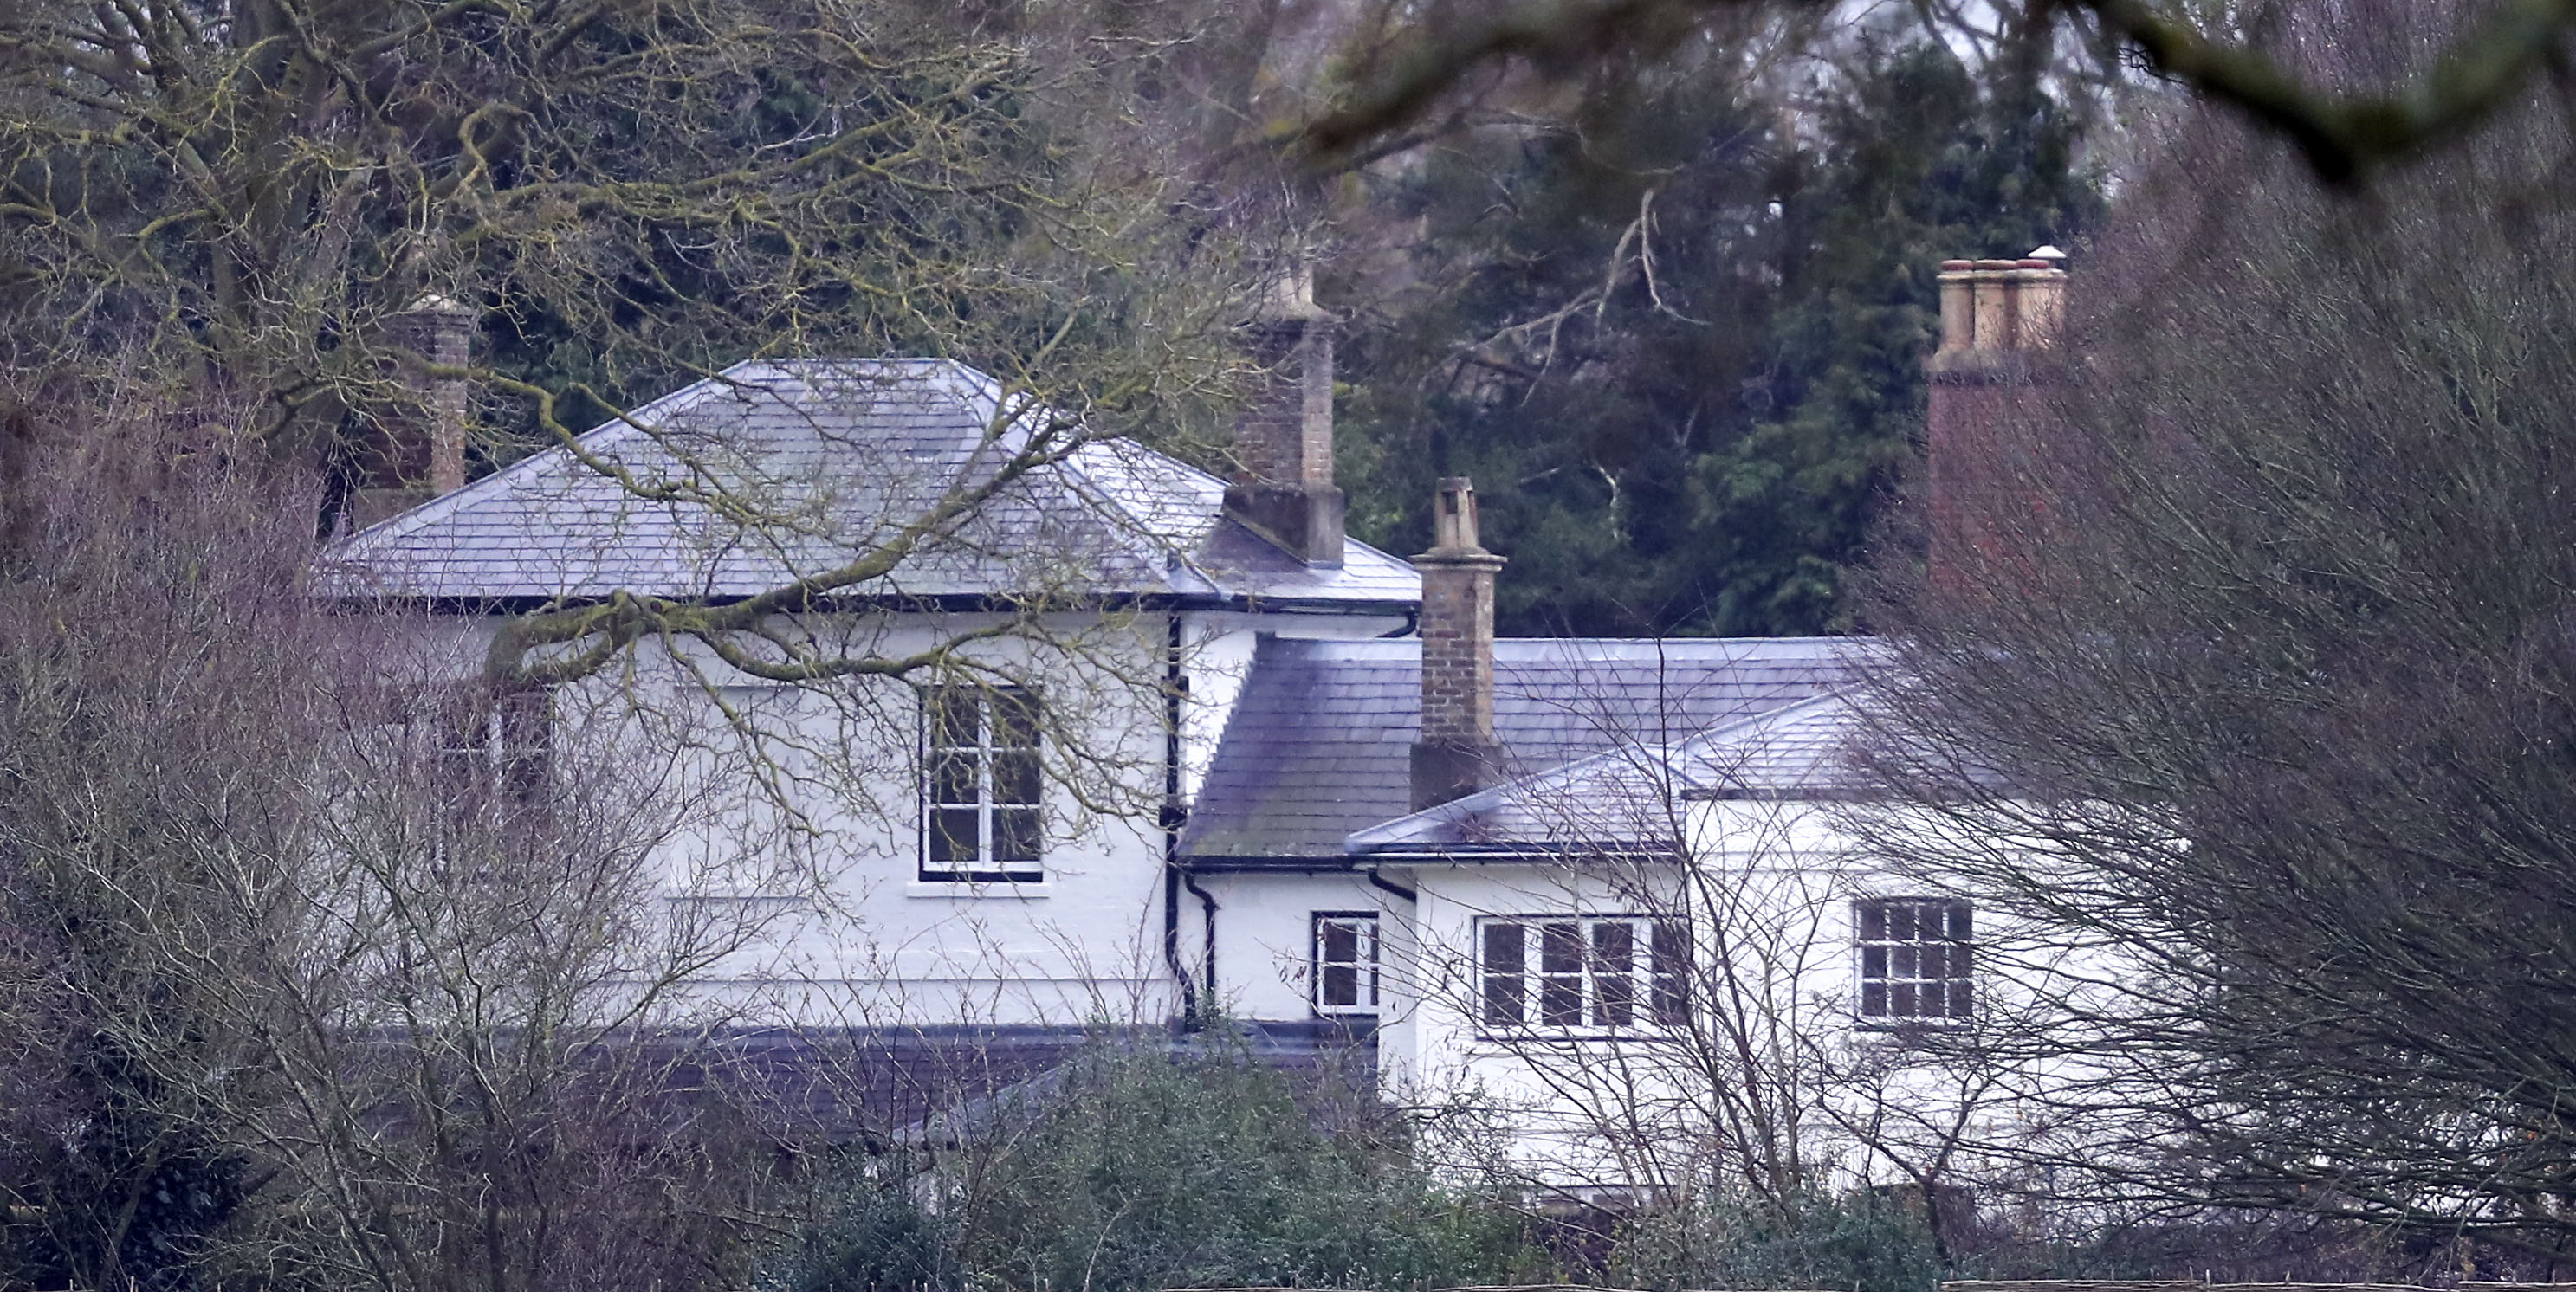 Vista de Frogmore Cottage en Windsor, Inglaterra, el 14 de enero de 2020 | Fuente: Getty Images